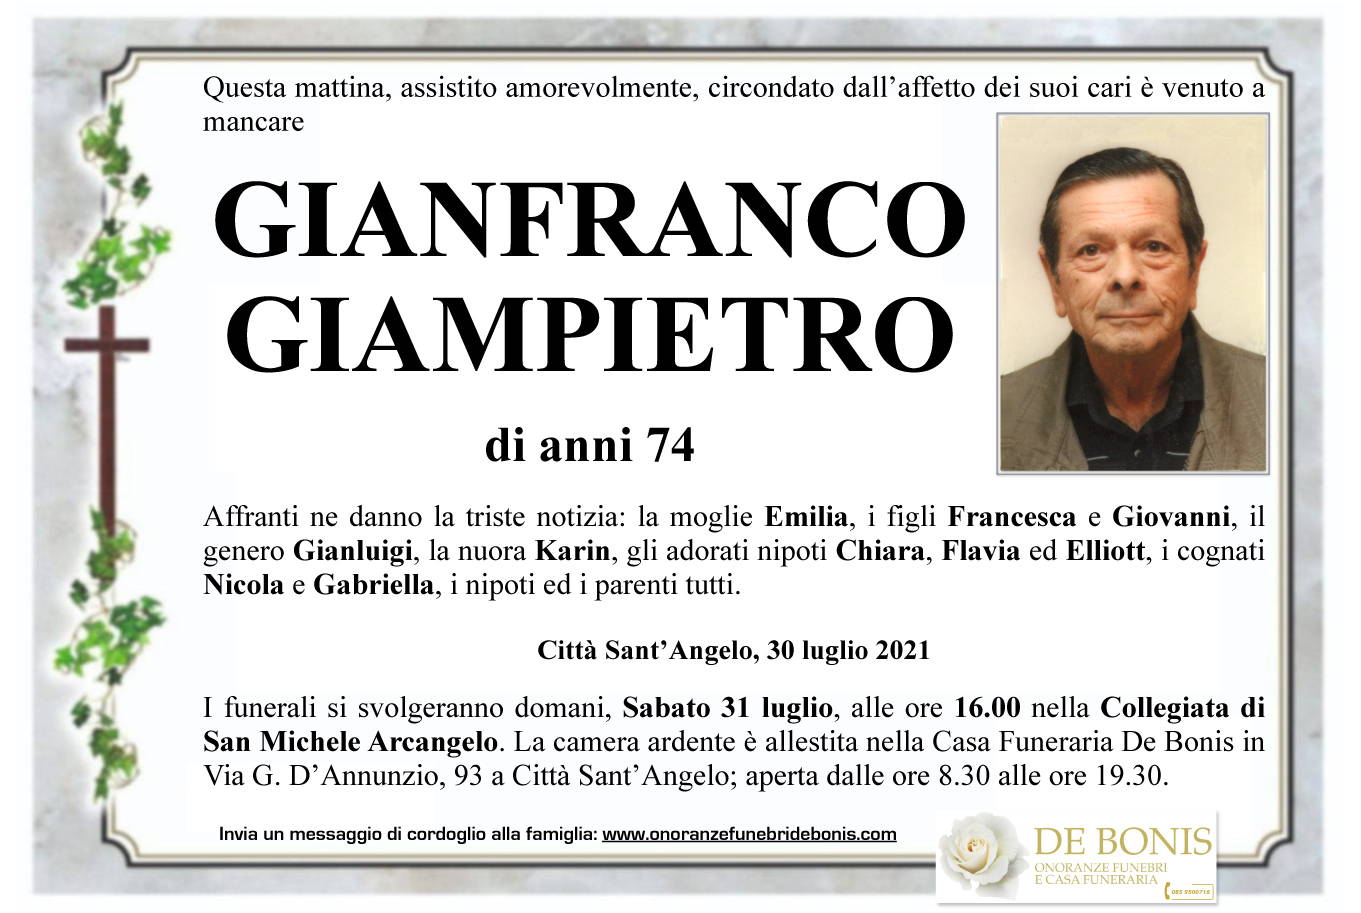 Gianfranco Giampietro